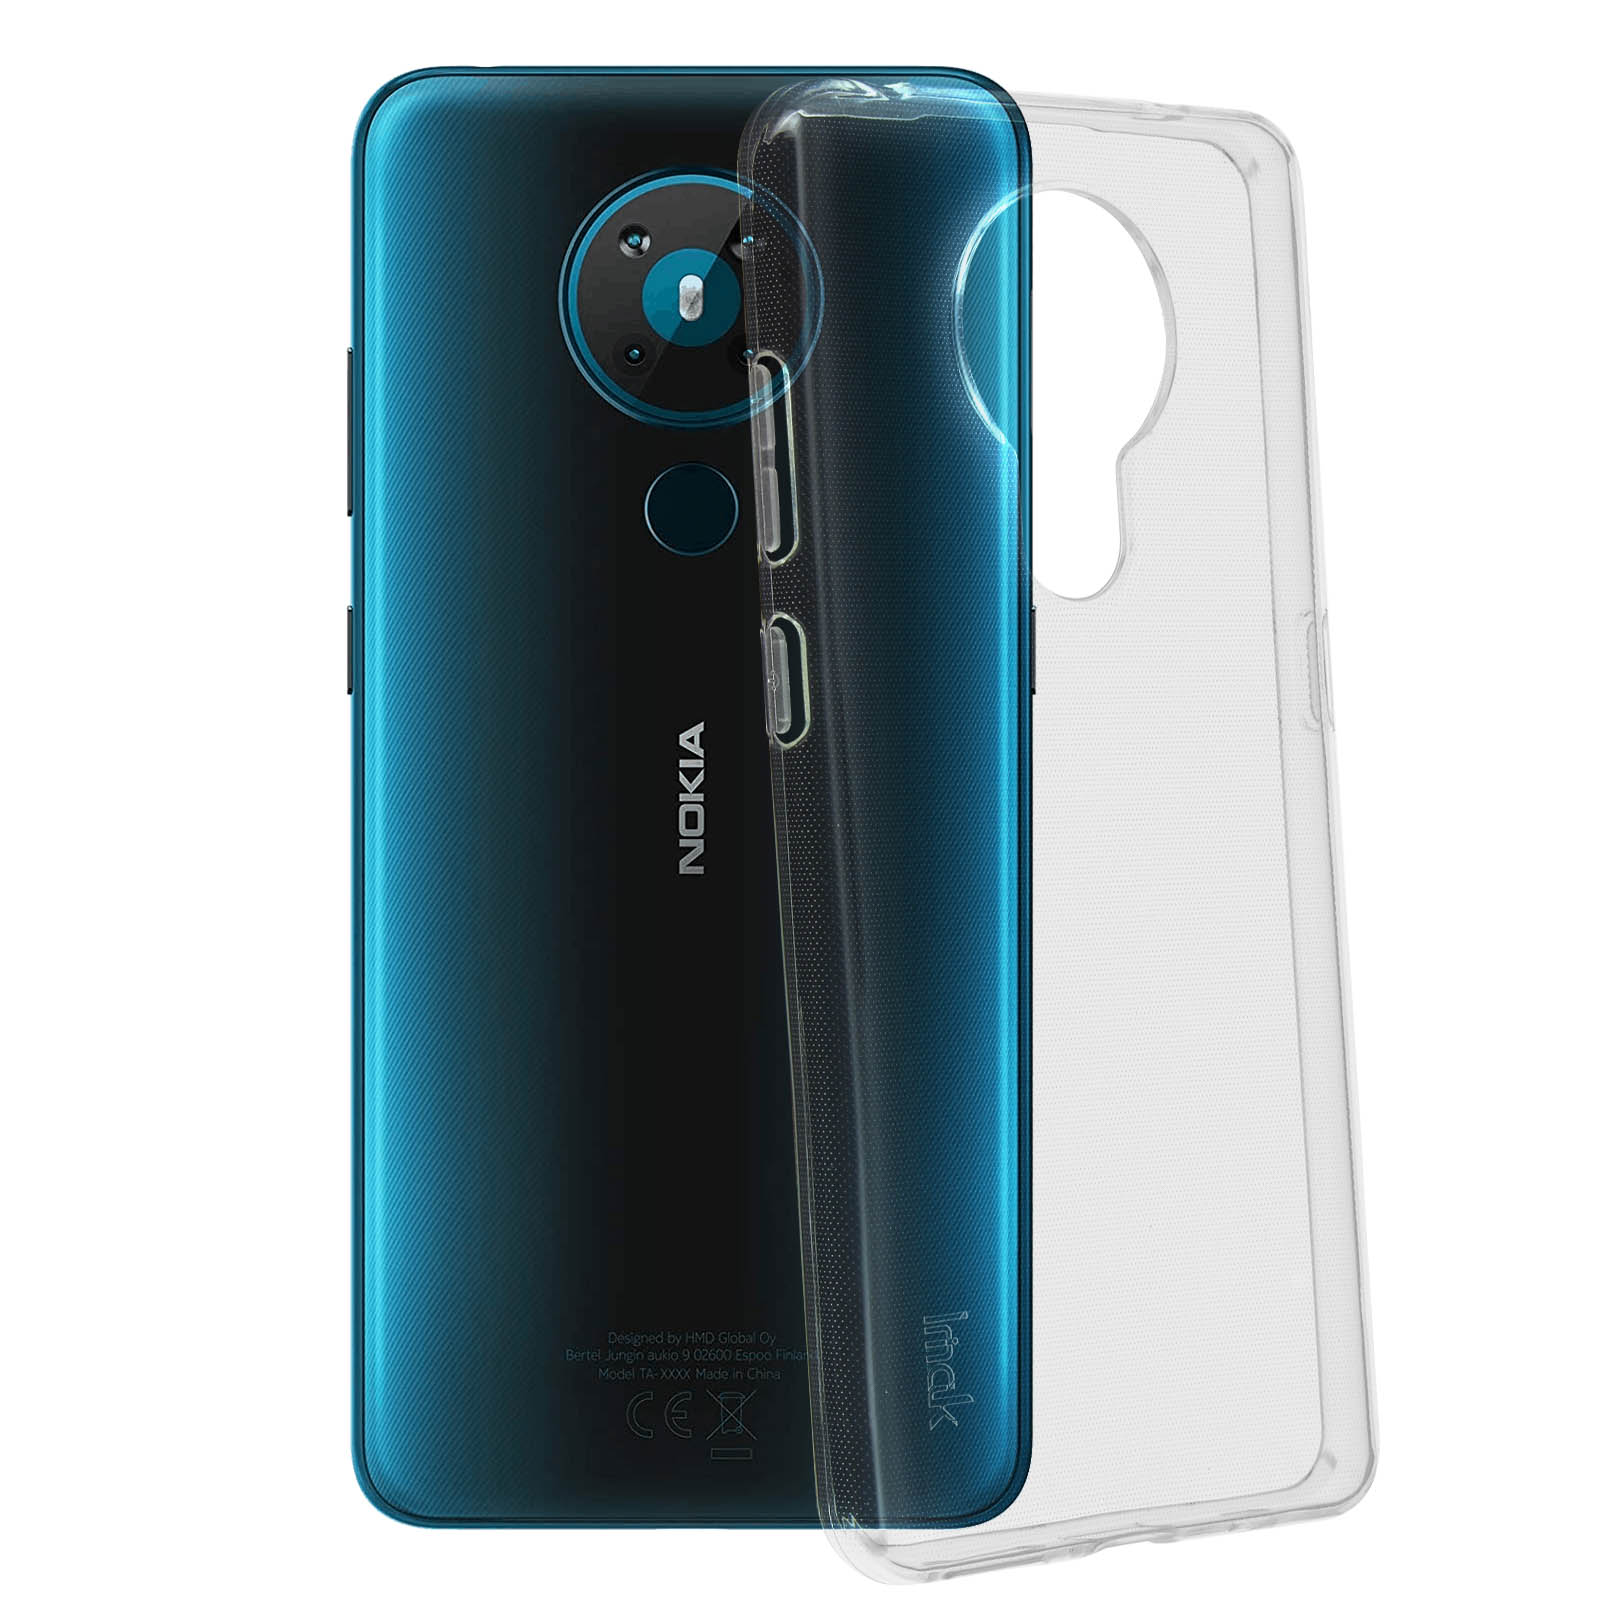 IMAK Backcover Series, Backcover, Nokia Transparent 5.3, Nokia